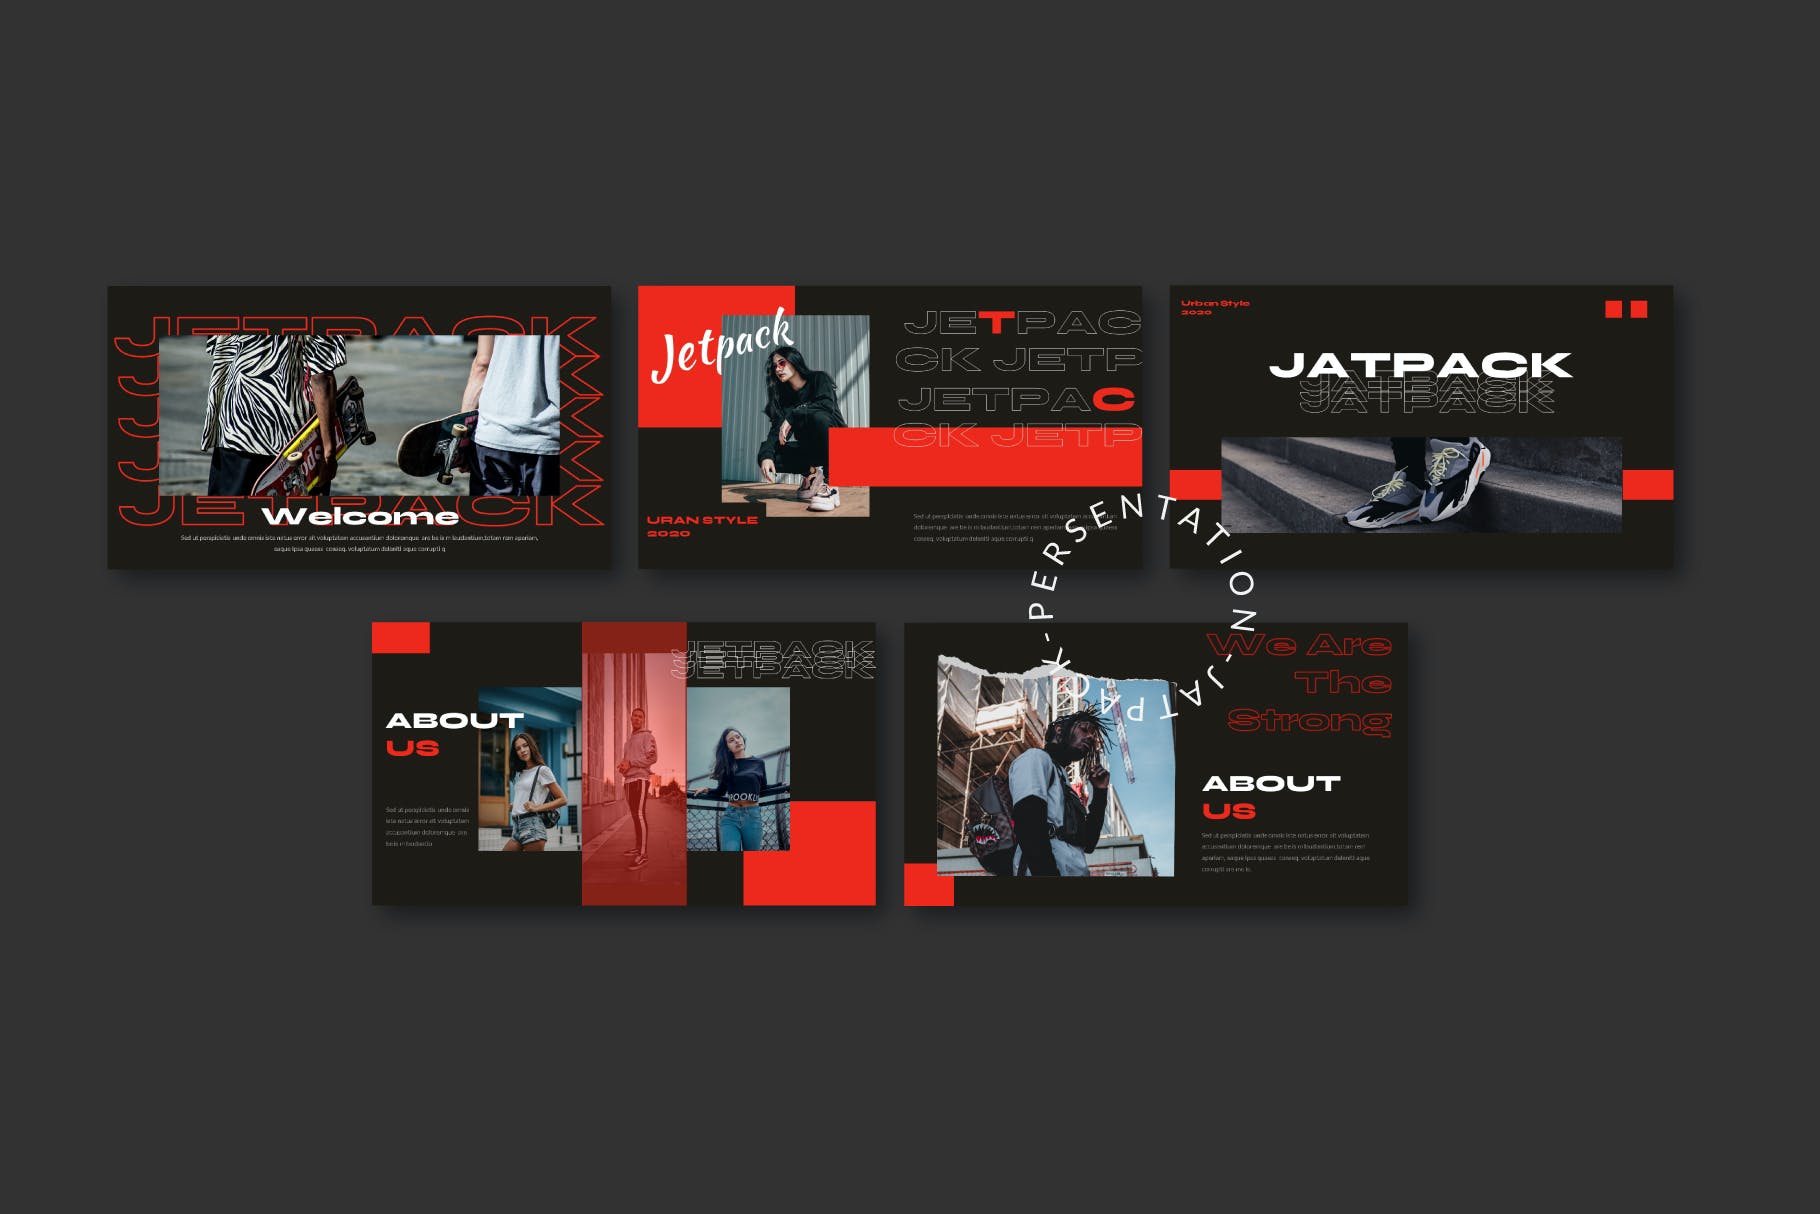 服装品牌红色主题推广PPT幻灯片模板素材 Jetpack – Powerpoint Template设计素材模板